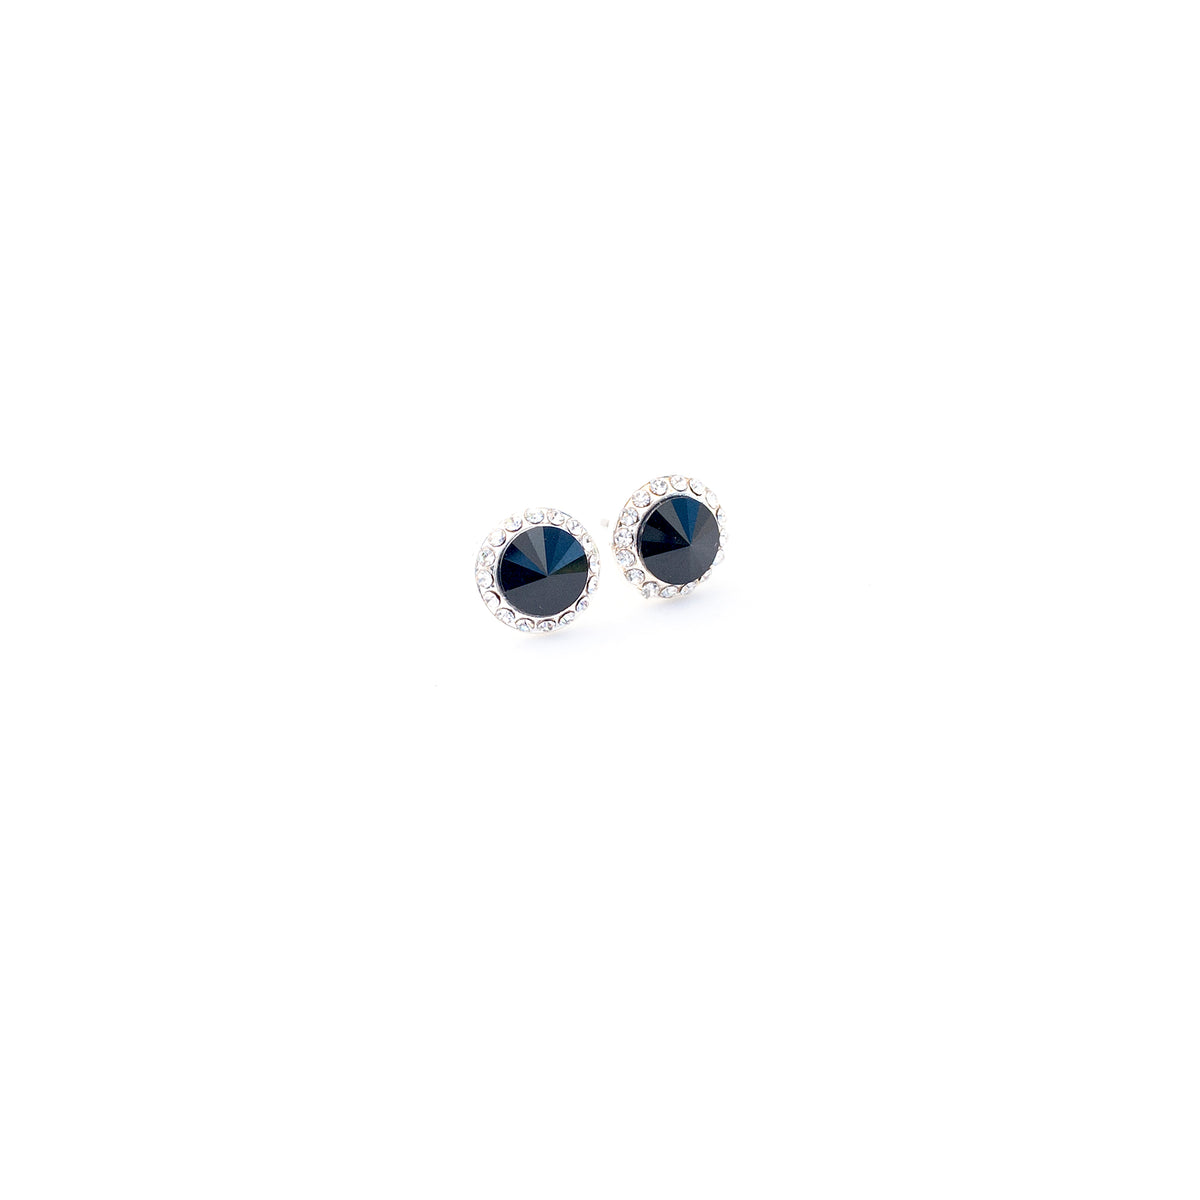 10mm Celestial Button Earrings - Black/Silver